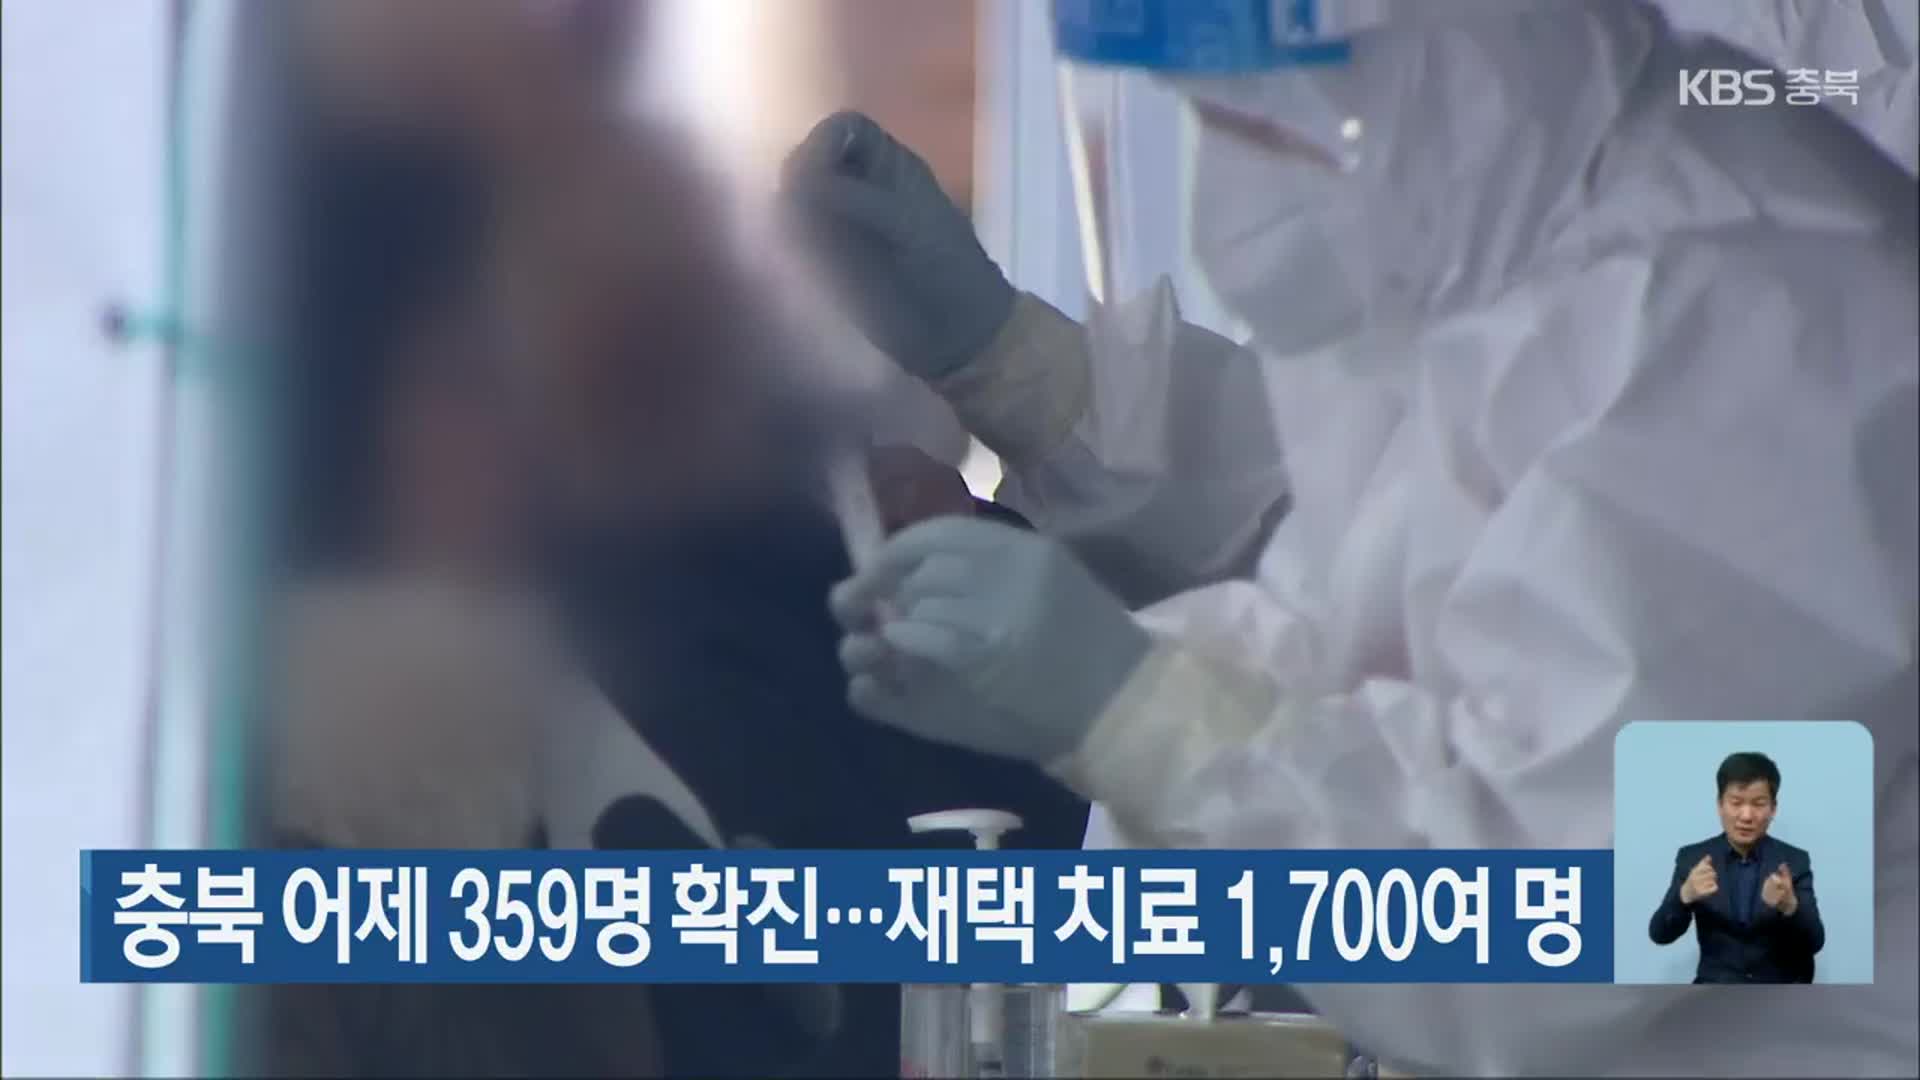 충북 어제 359명 확진…재택 치료 1,700여 명